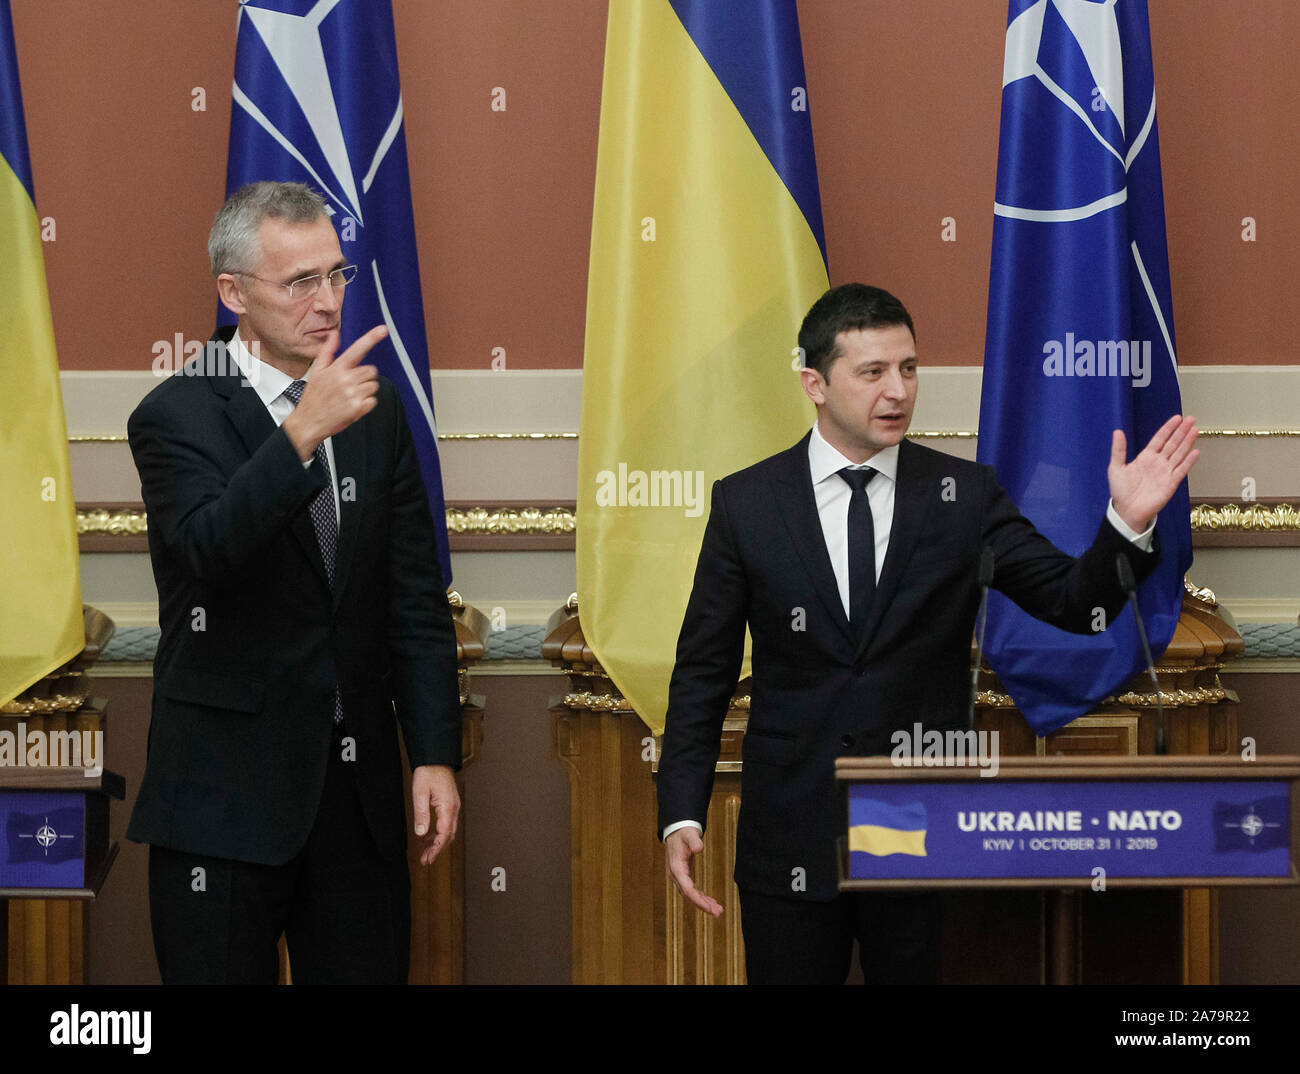 NATO-Generalsekretär, Jens Stoltenberg (L) und der Präsident der Ukraine, Wladimir Zelensky (R) sprechen nach einer Pressekonferenz. Der Nordatlantikrat (NAC) mit NATO-Generalsekretär, Jens Stoltenberg besucht Ukraine Oktober 30-31, 2019. Stockfoto